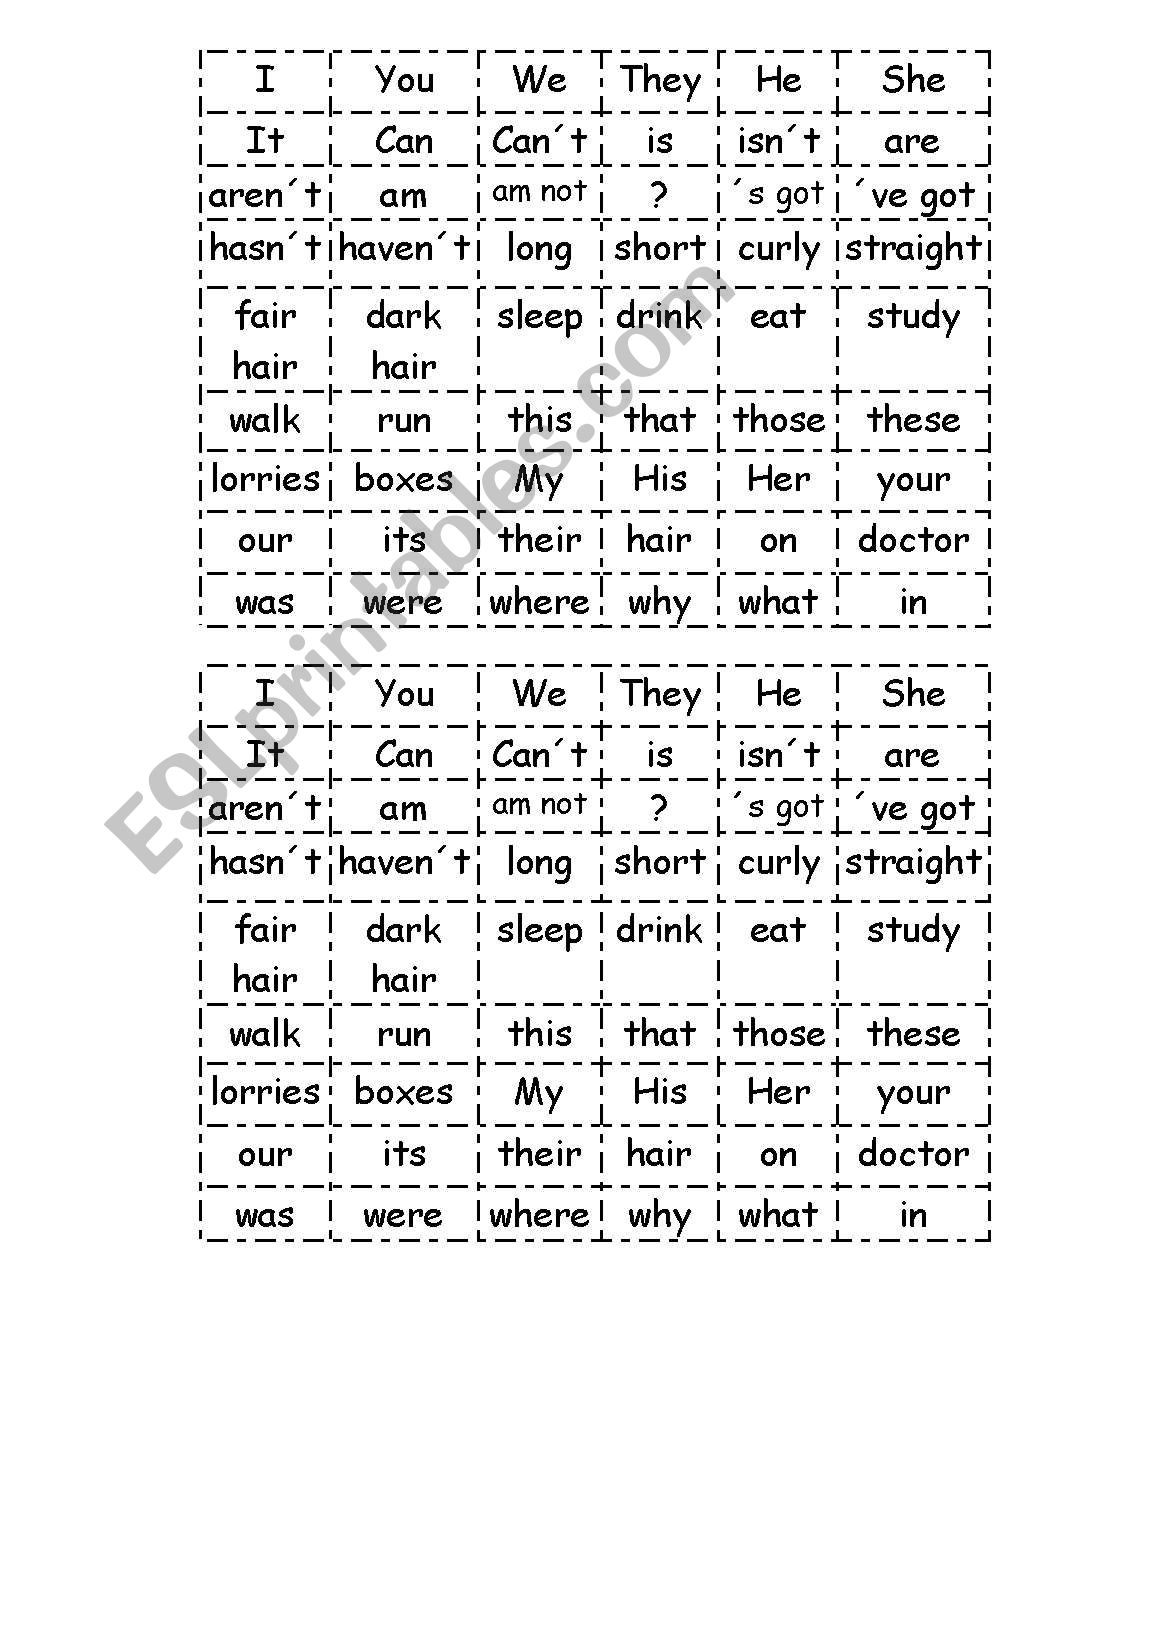 Word order worksheet